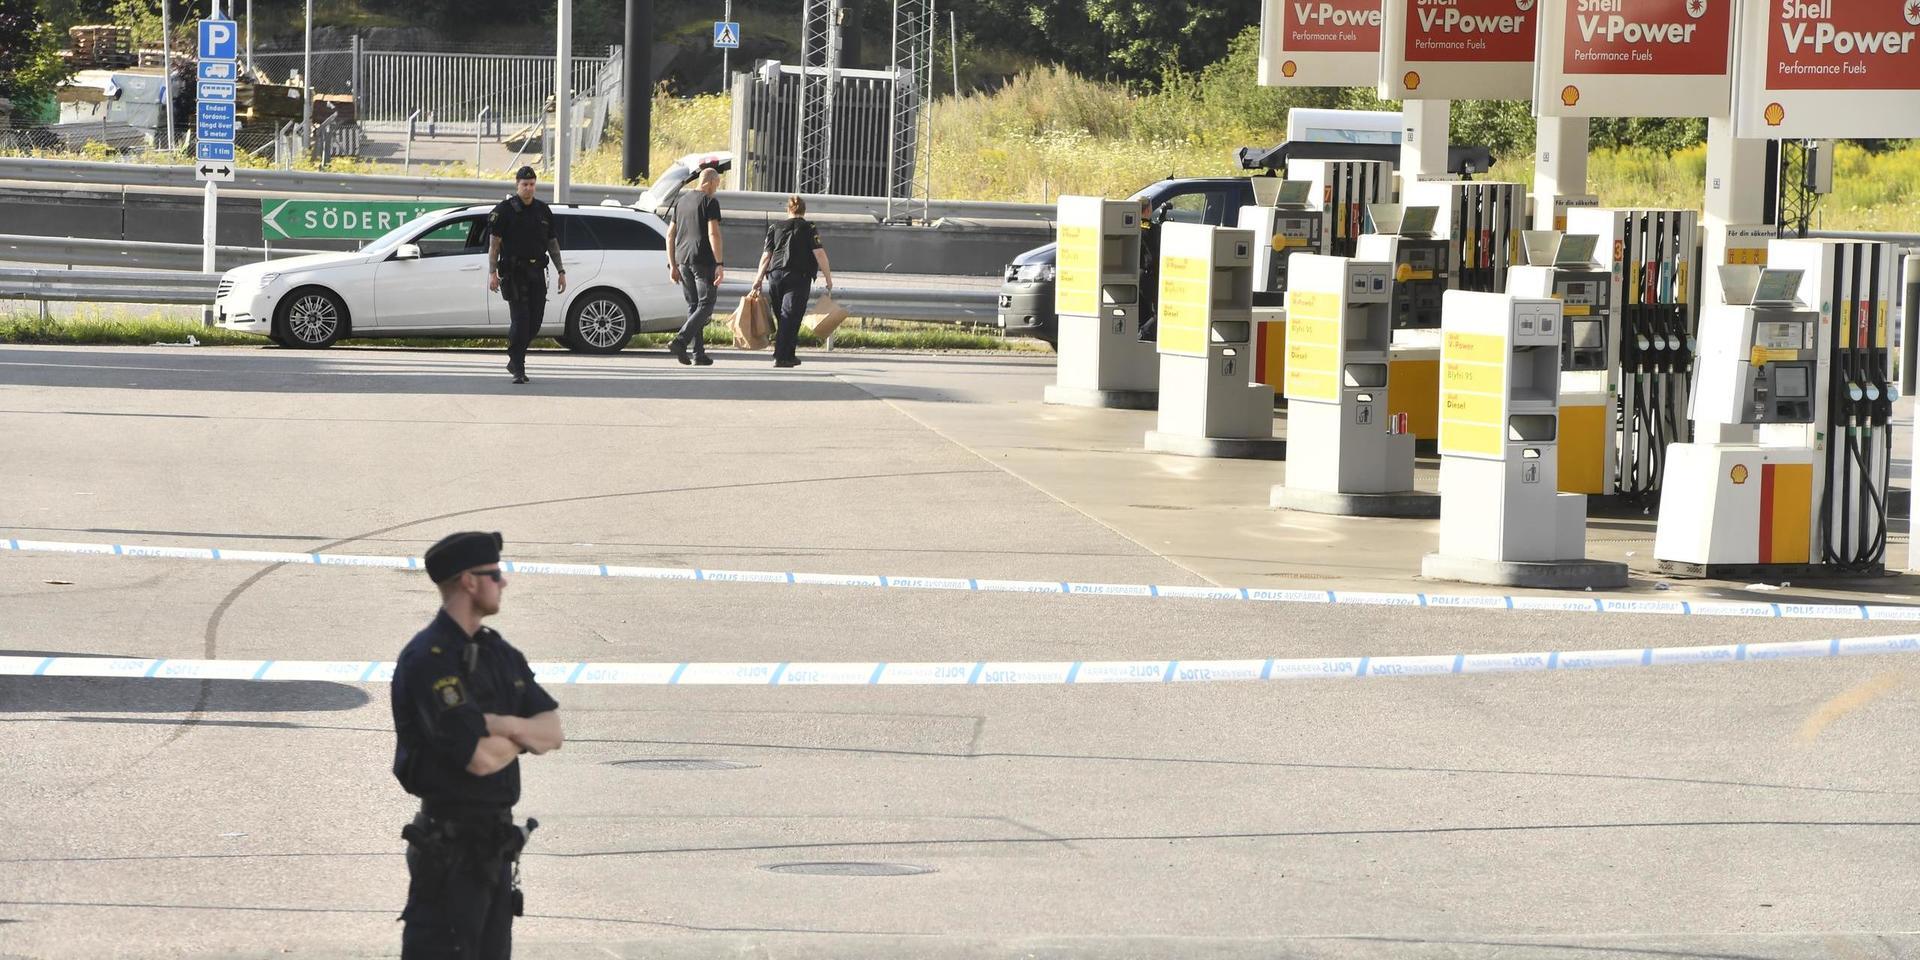 En ung flicka avled efter att ha skottskadats i Norsborg i Botkyrka kommun söder om Stockholm. En bensinmack har spärrats av och polisen arbetar med att samla in information.